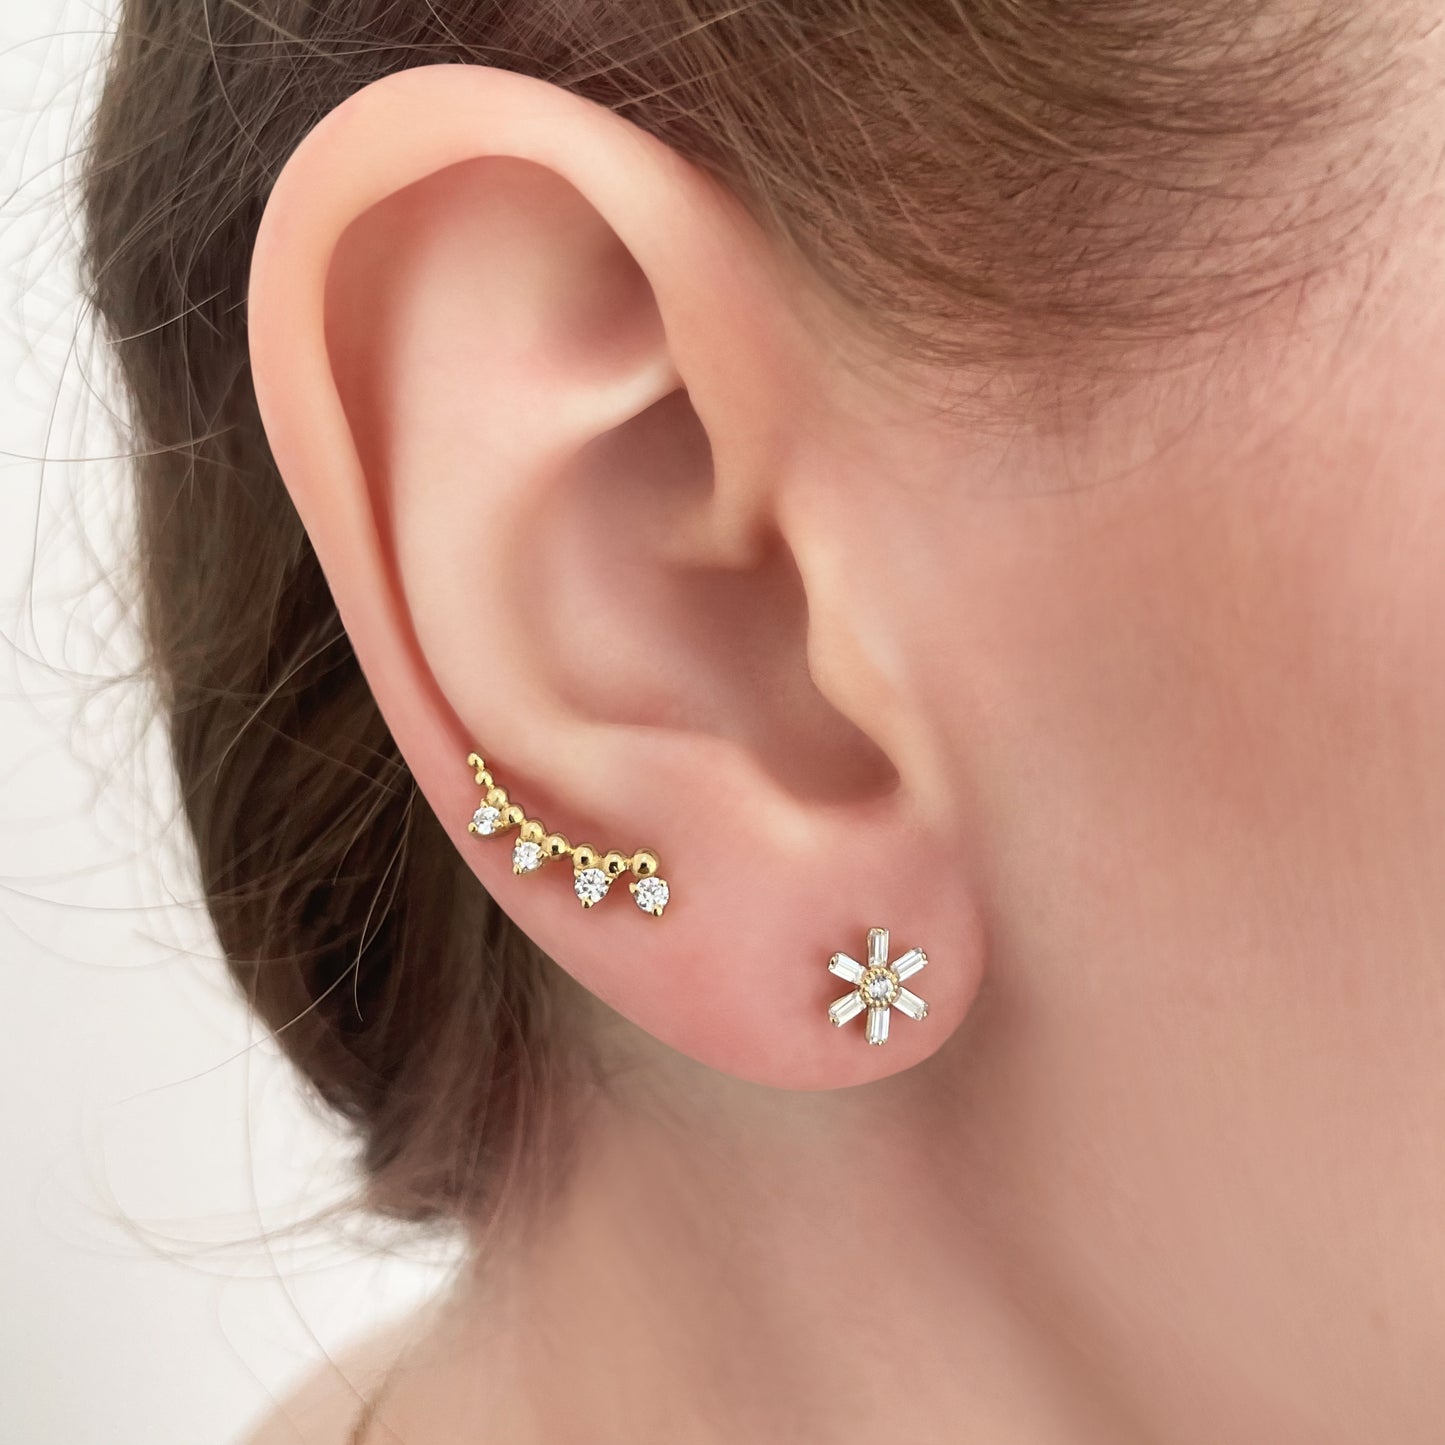 Baguette Flower Stud Diamonds Earrings - - Jewelry - Goldie Paris Jewelry - Baguette Earring